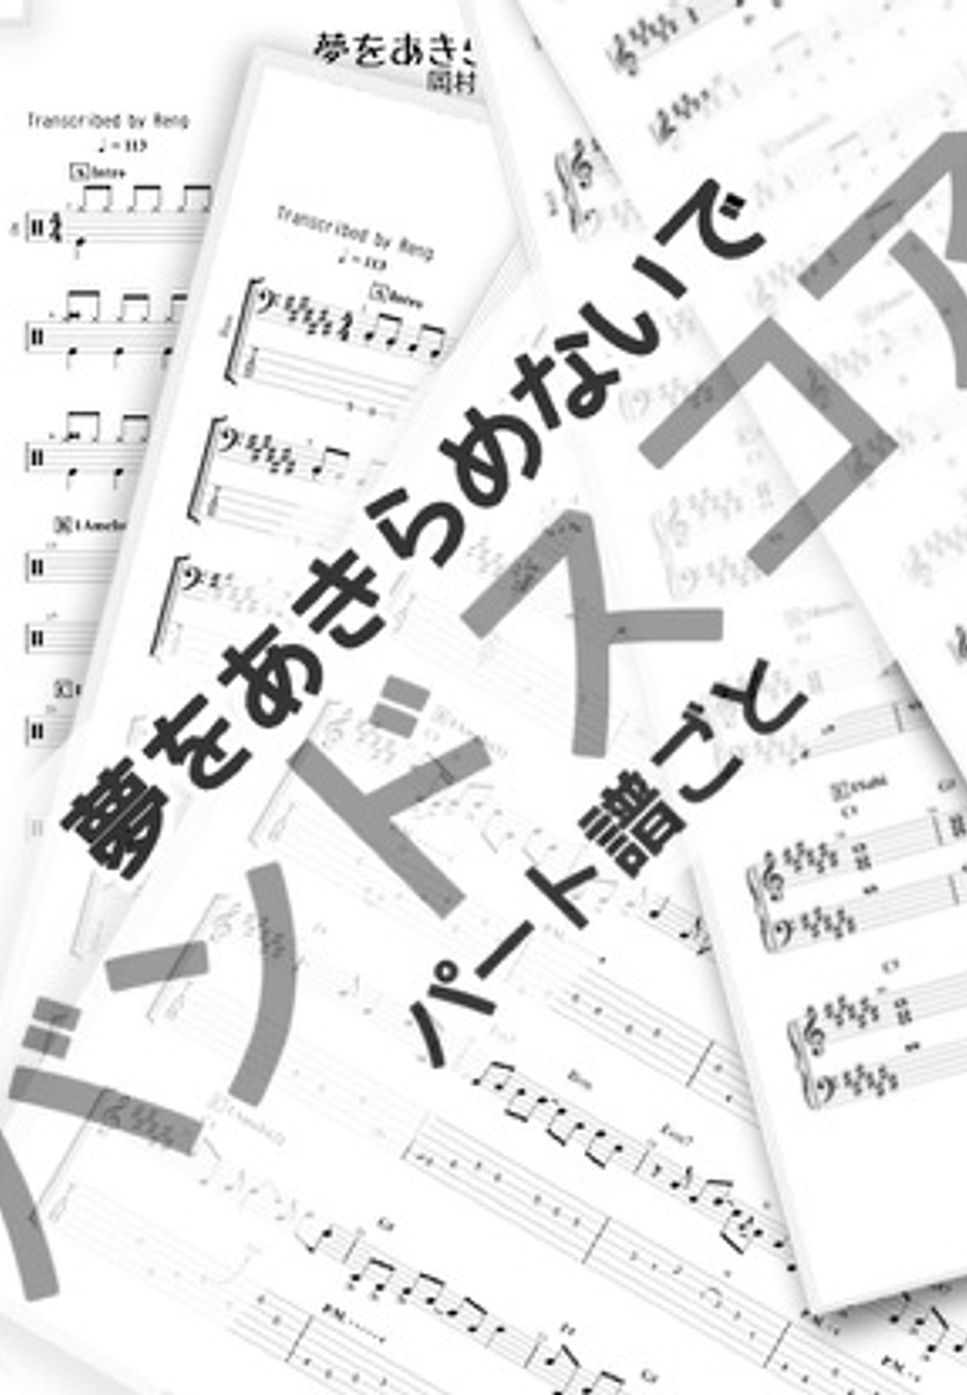 岡村 孝子 - 夢をあきらめないで (バンドスコア/パート譜set/歌詞/コード付き/映画『逆境ナイン』OST) by Reng